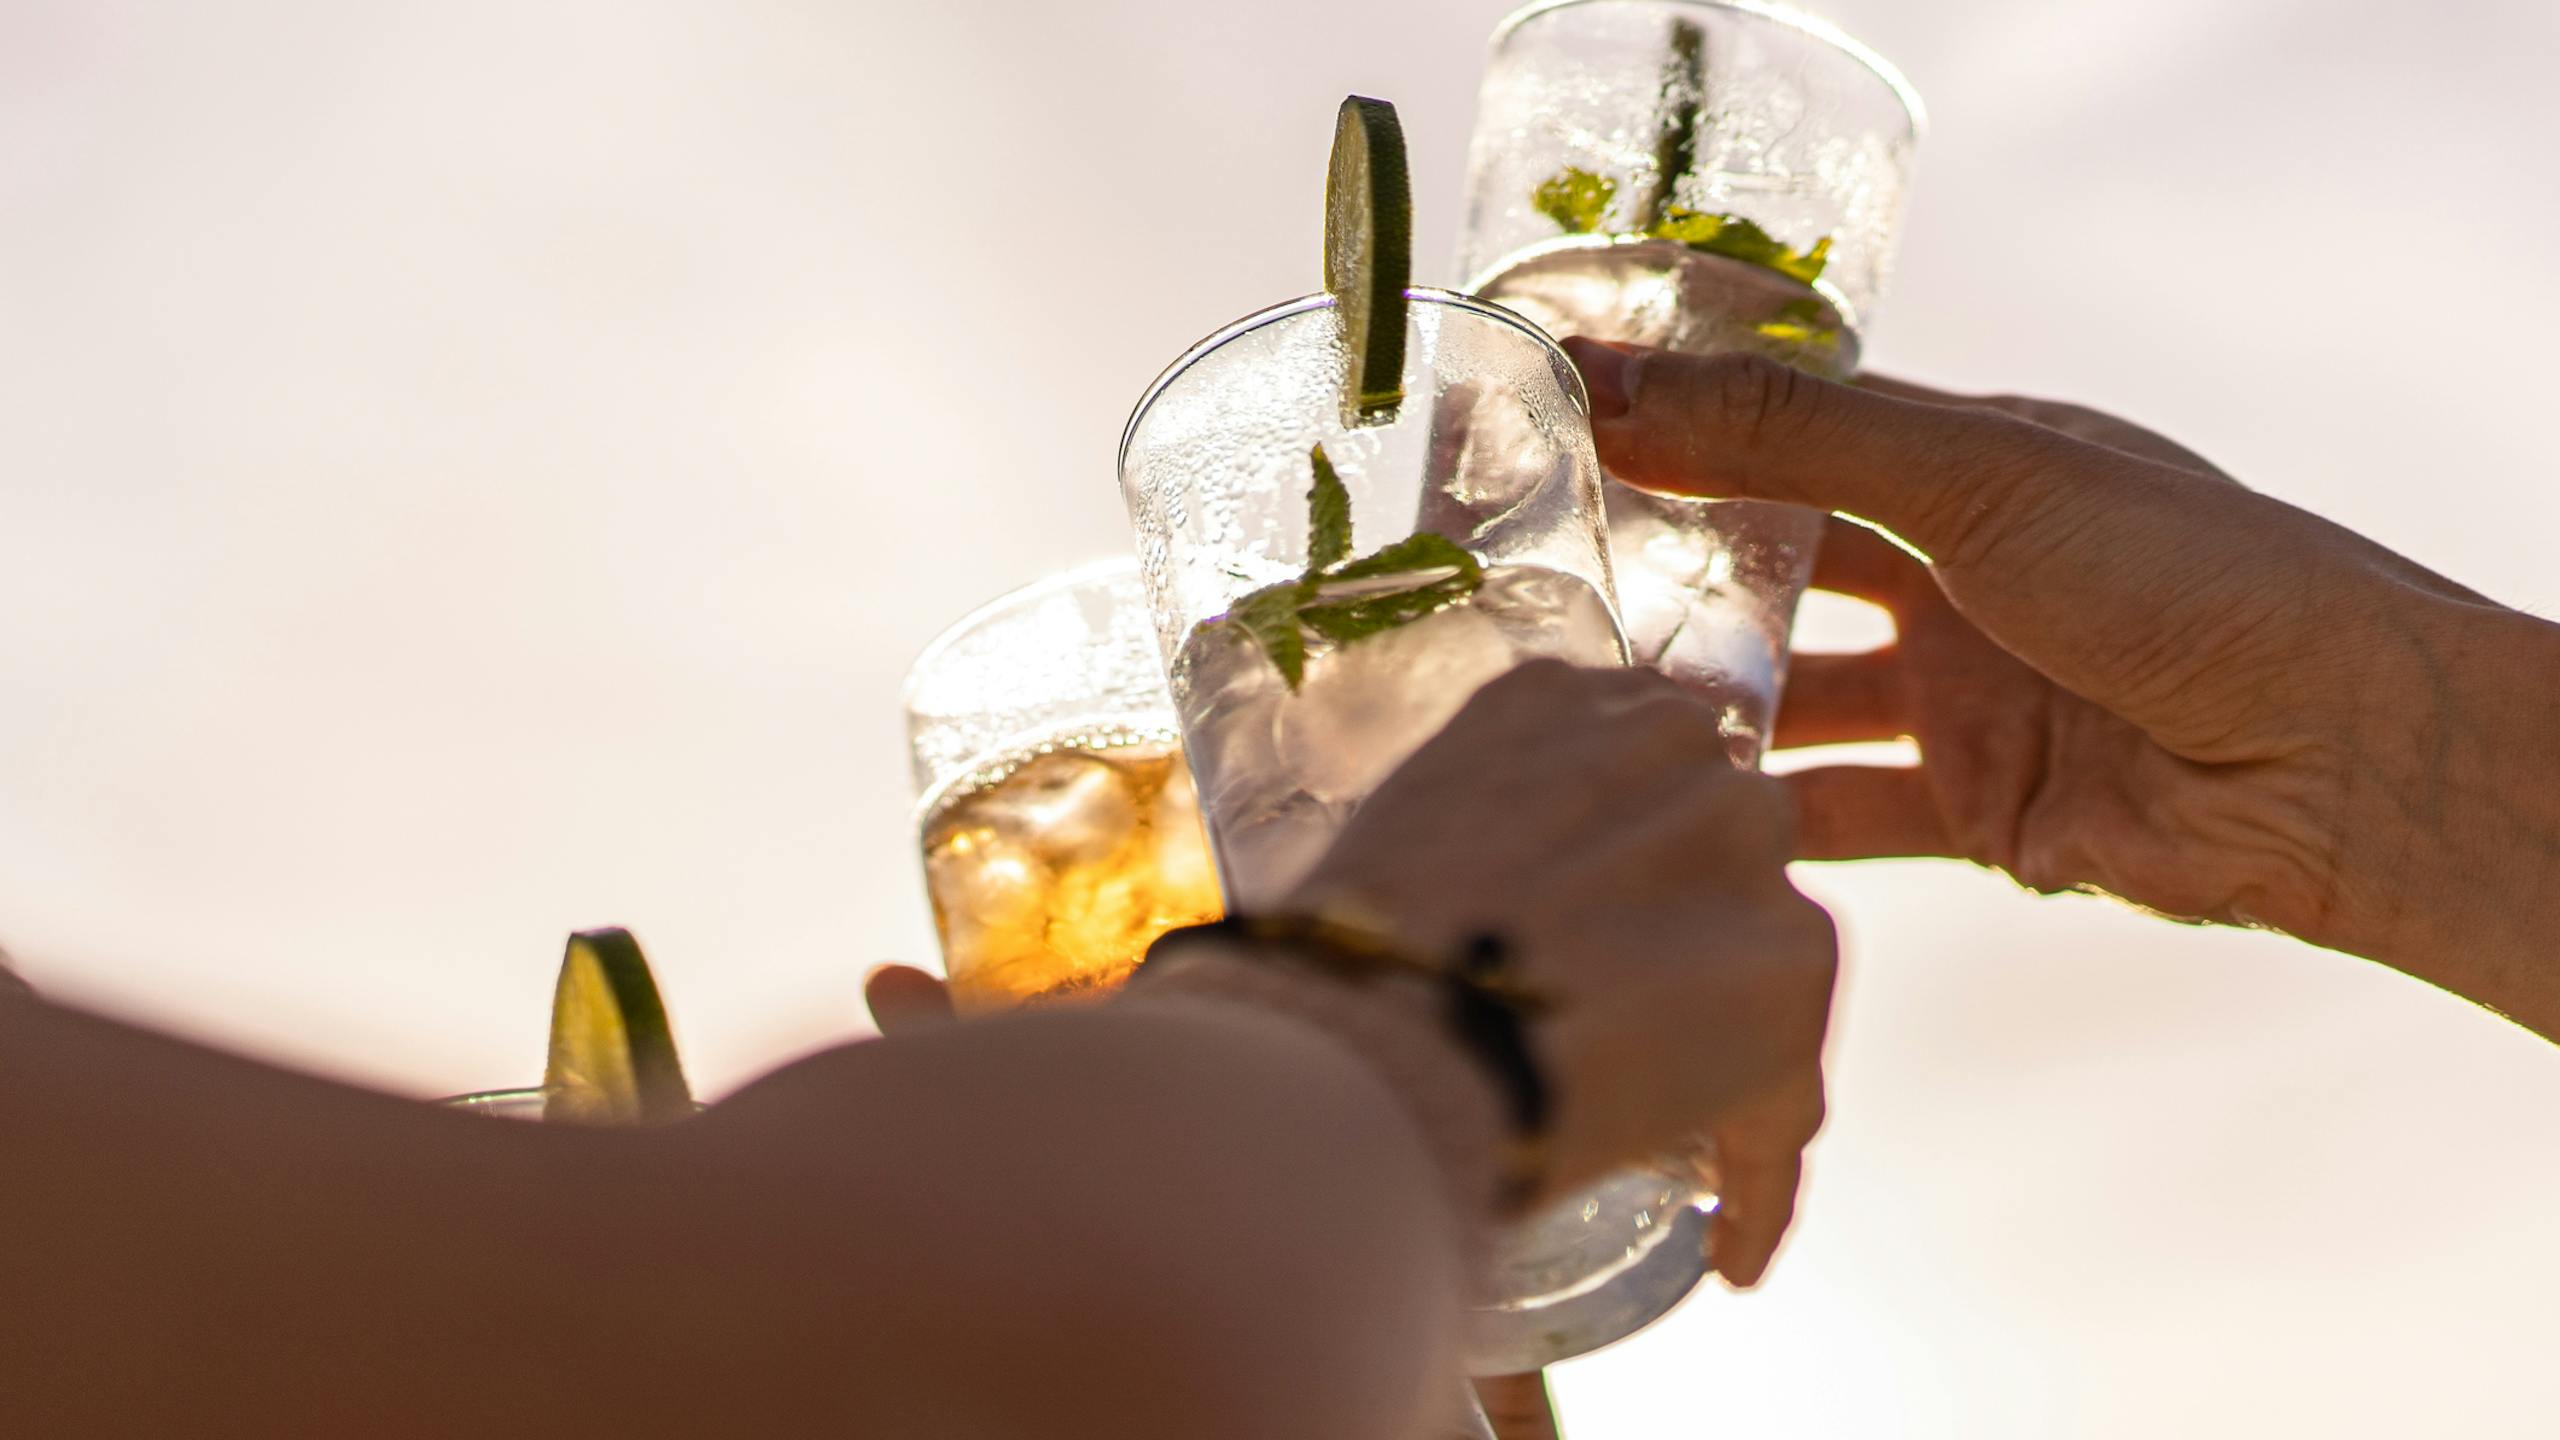 Des amis se lèvent des verres pour un toast de célébration contre le ciel en été